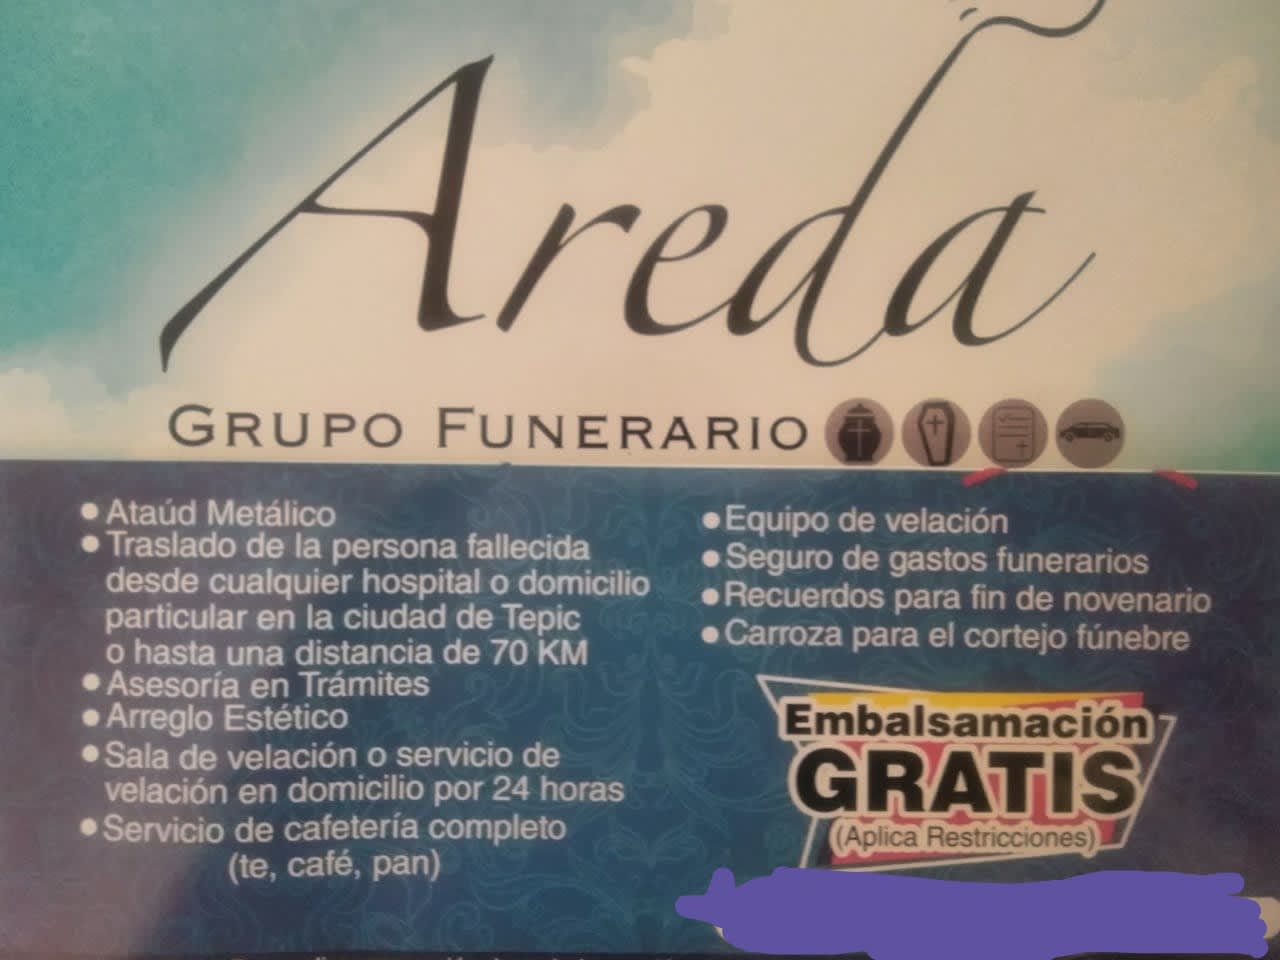 Areda Grupo Funerario